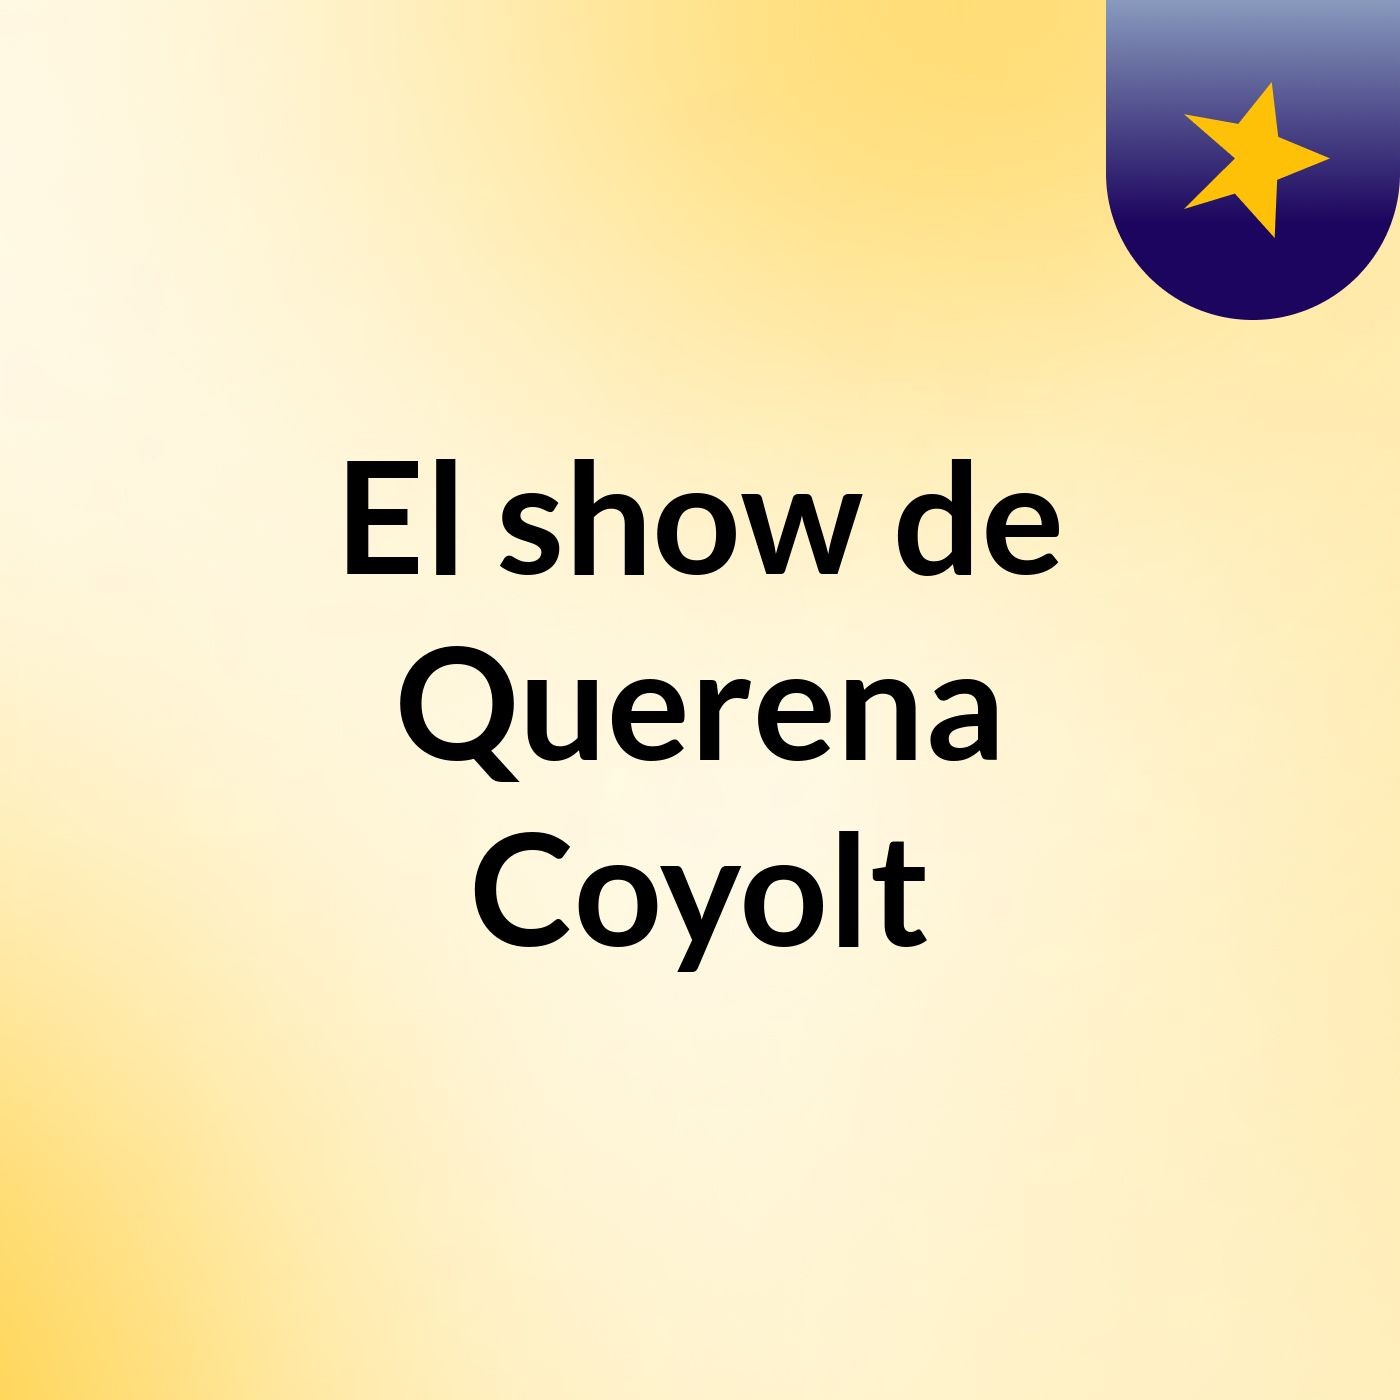 El show de Querena Coyolt